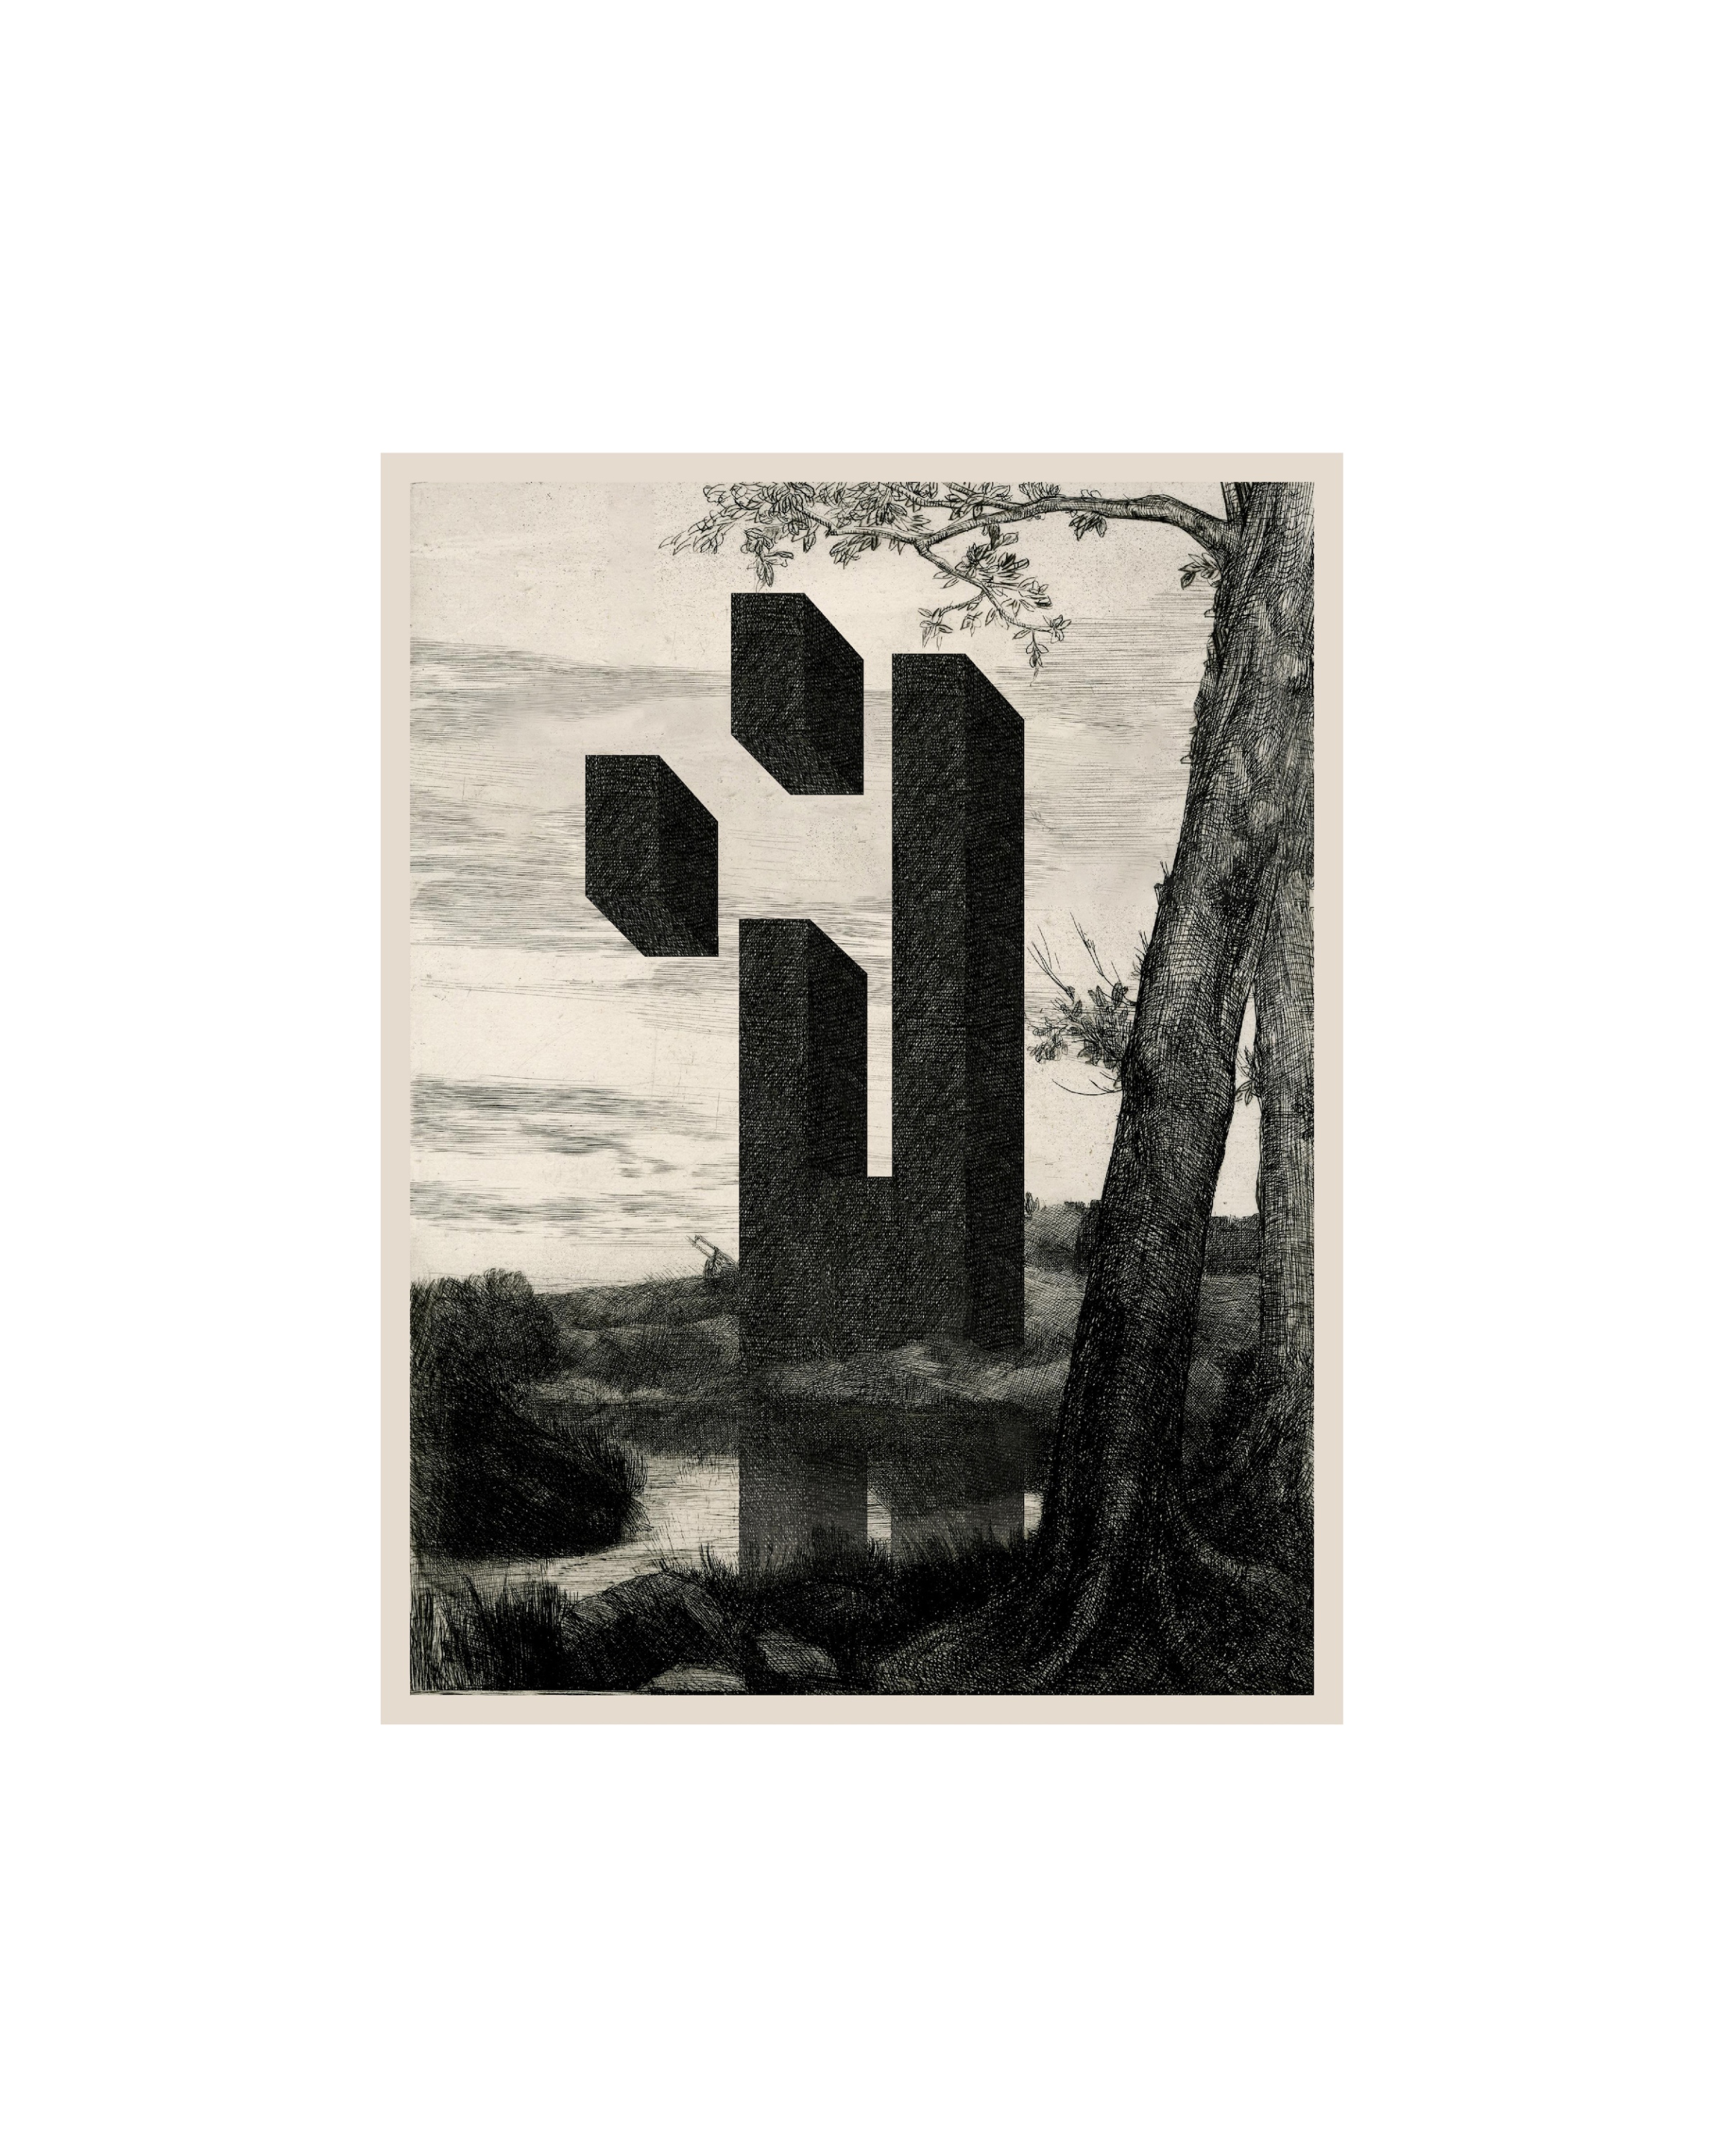 # 5: digitális technika, print; (50x30cm), 2021, e.k.: Alphonse Legros - La ferme au grand arbre (1837-1911 között)